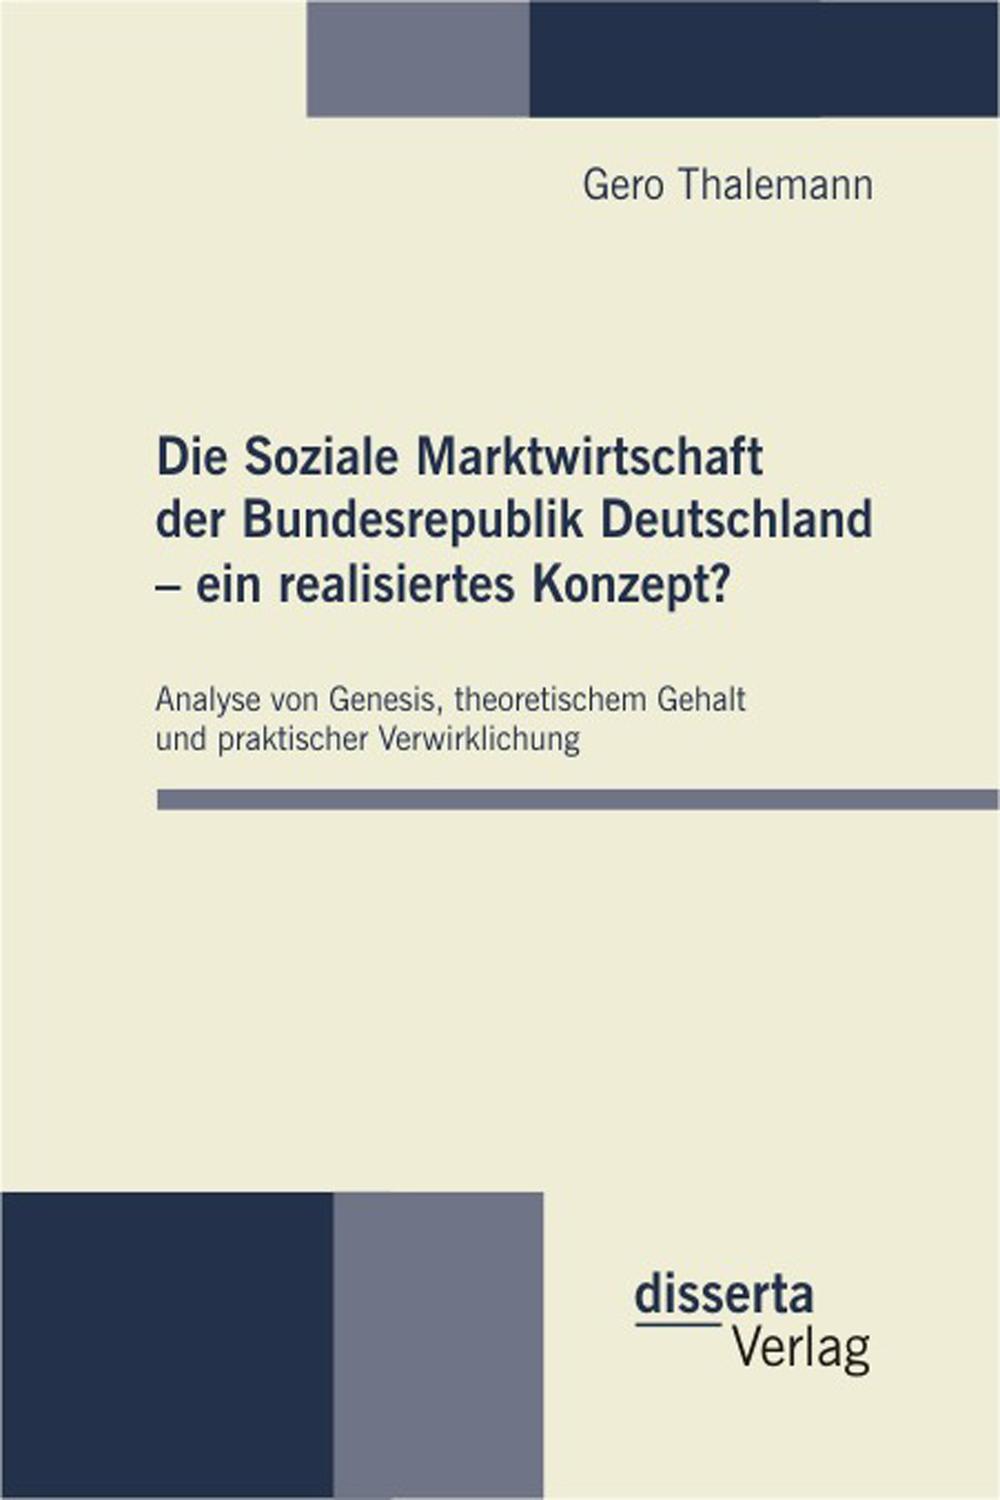 Die Soziale Marktwirtschaft der Bundesrepublik Deutschland – ein realisiertes Konzept? - Gero Thalemann